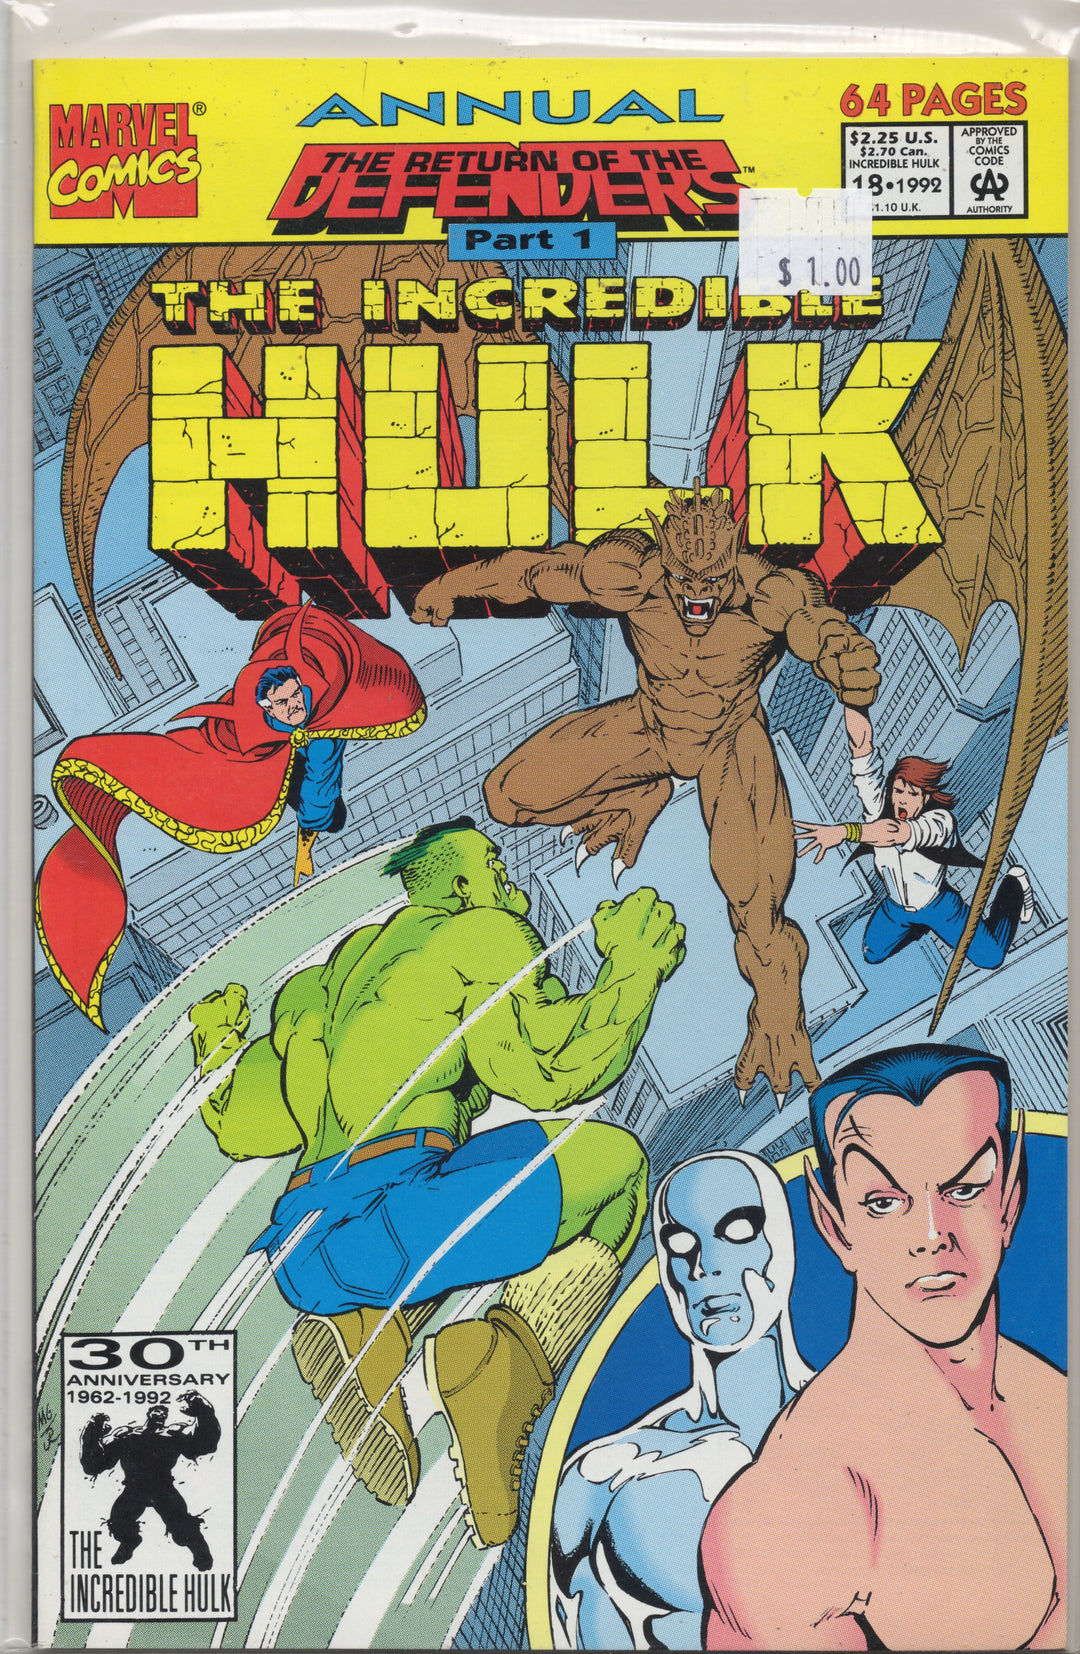 The Incredible Hulk #18 : 1992 Annual